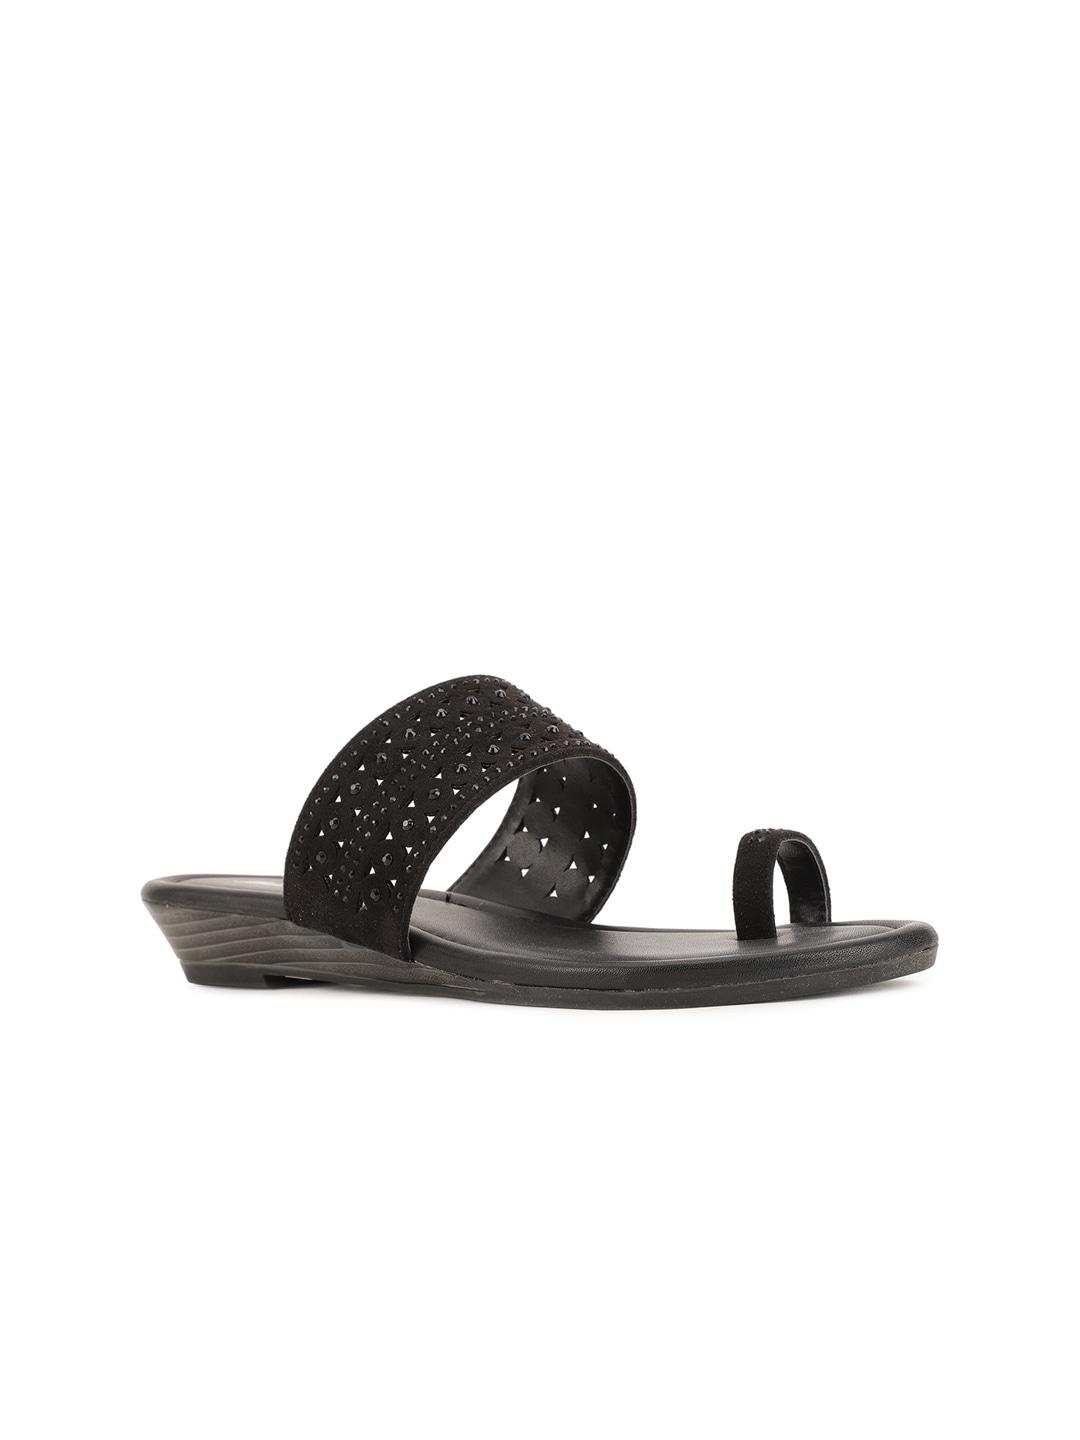 bata-black-embellished-pu-comfort-sandals